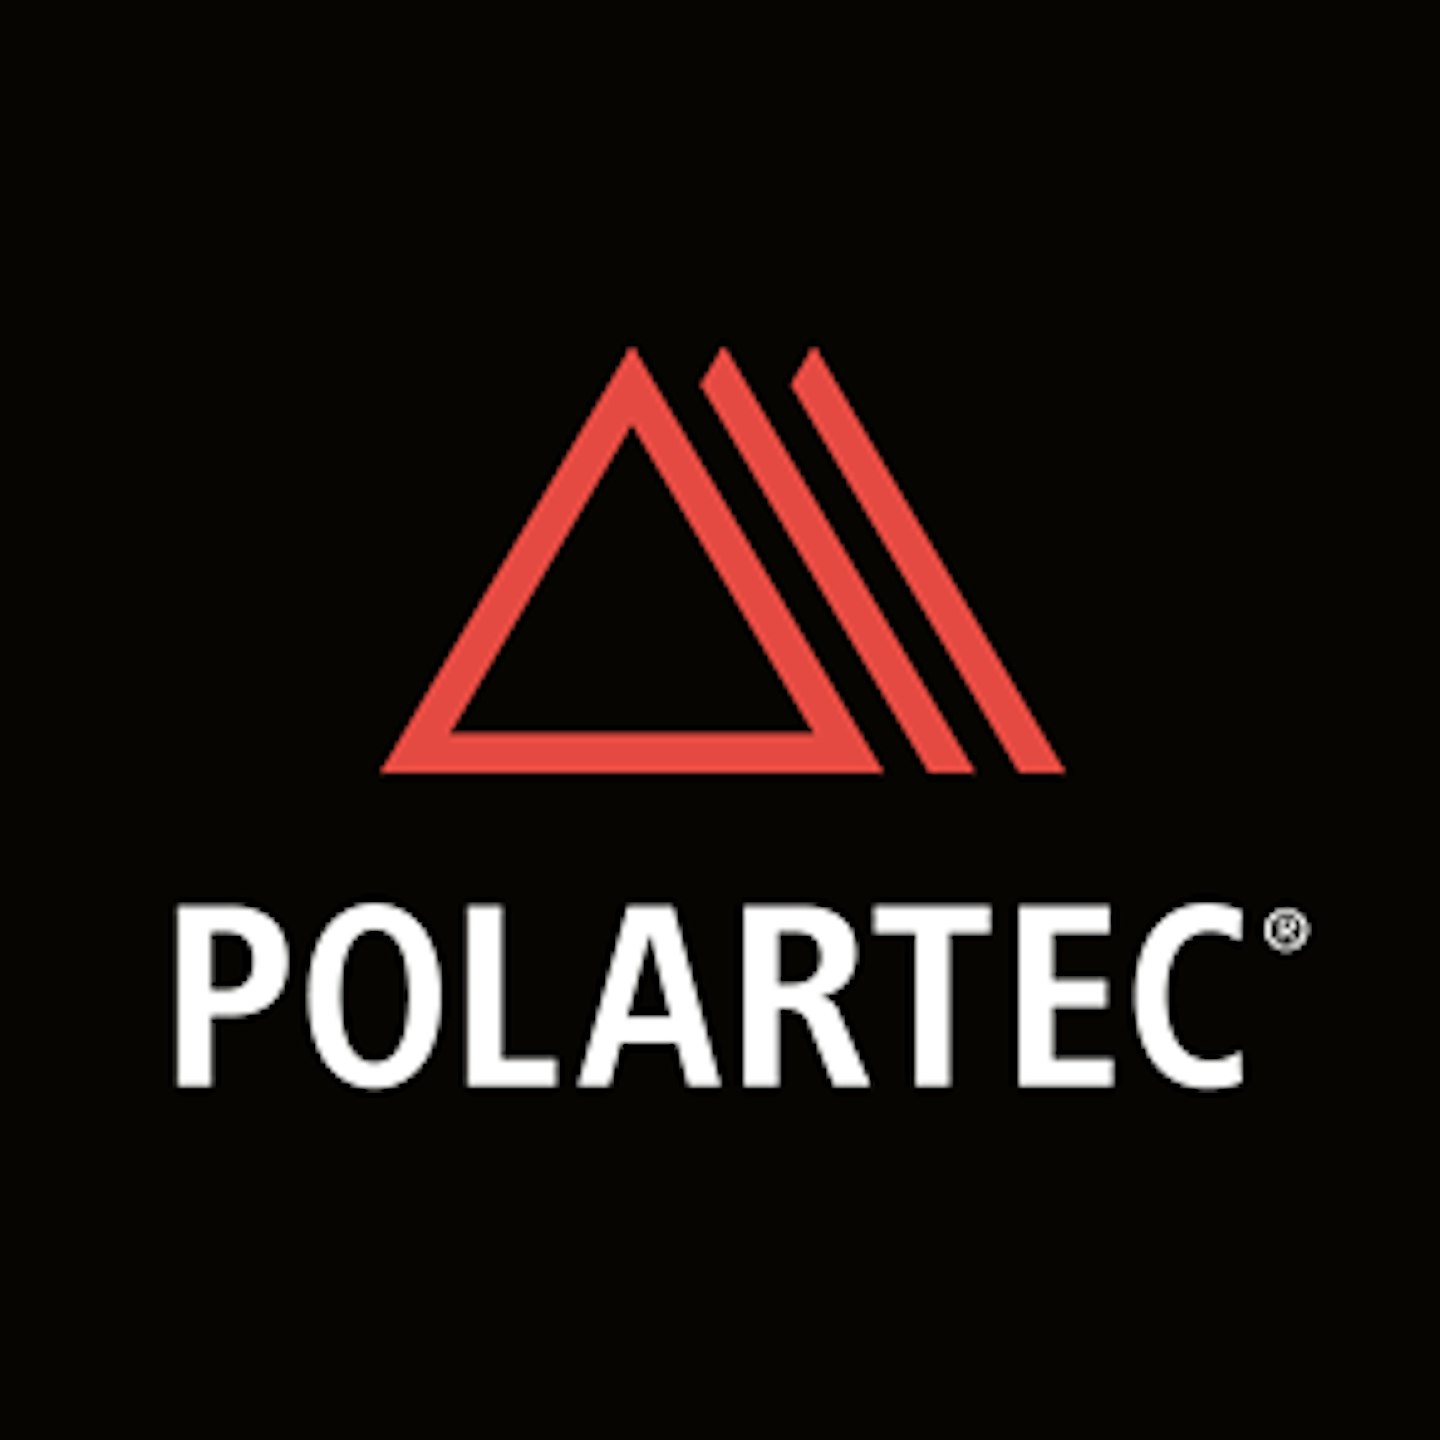 Polartec logo